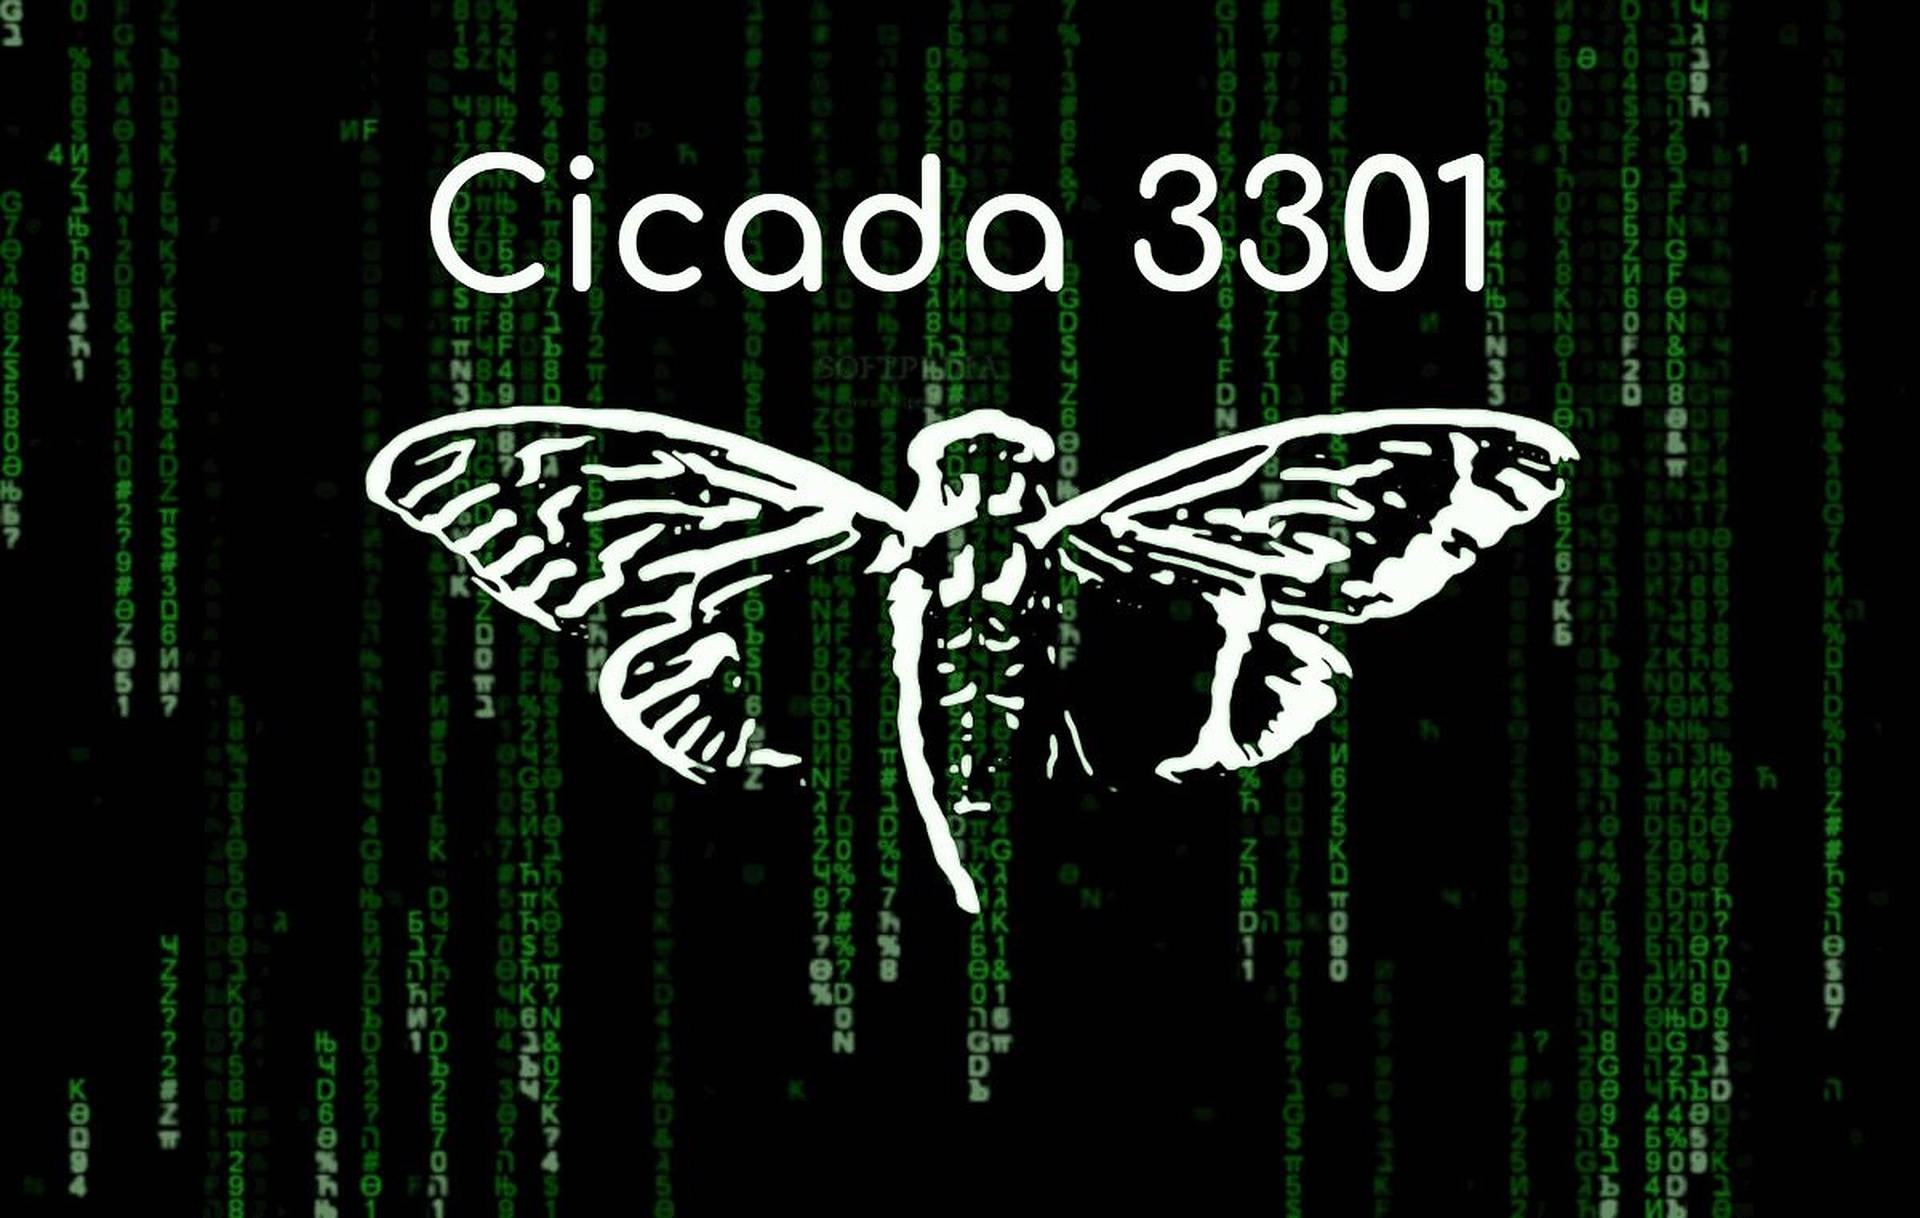 Imágenes De Cicada